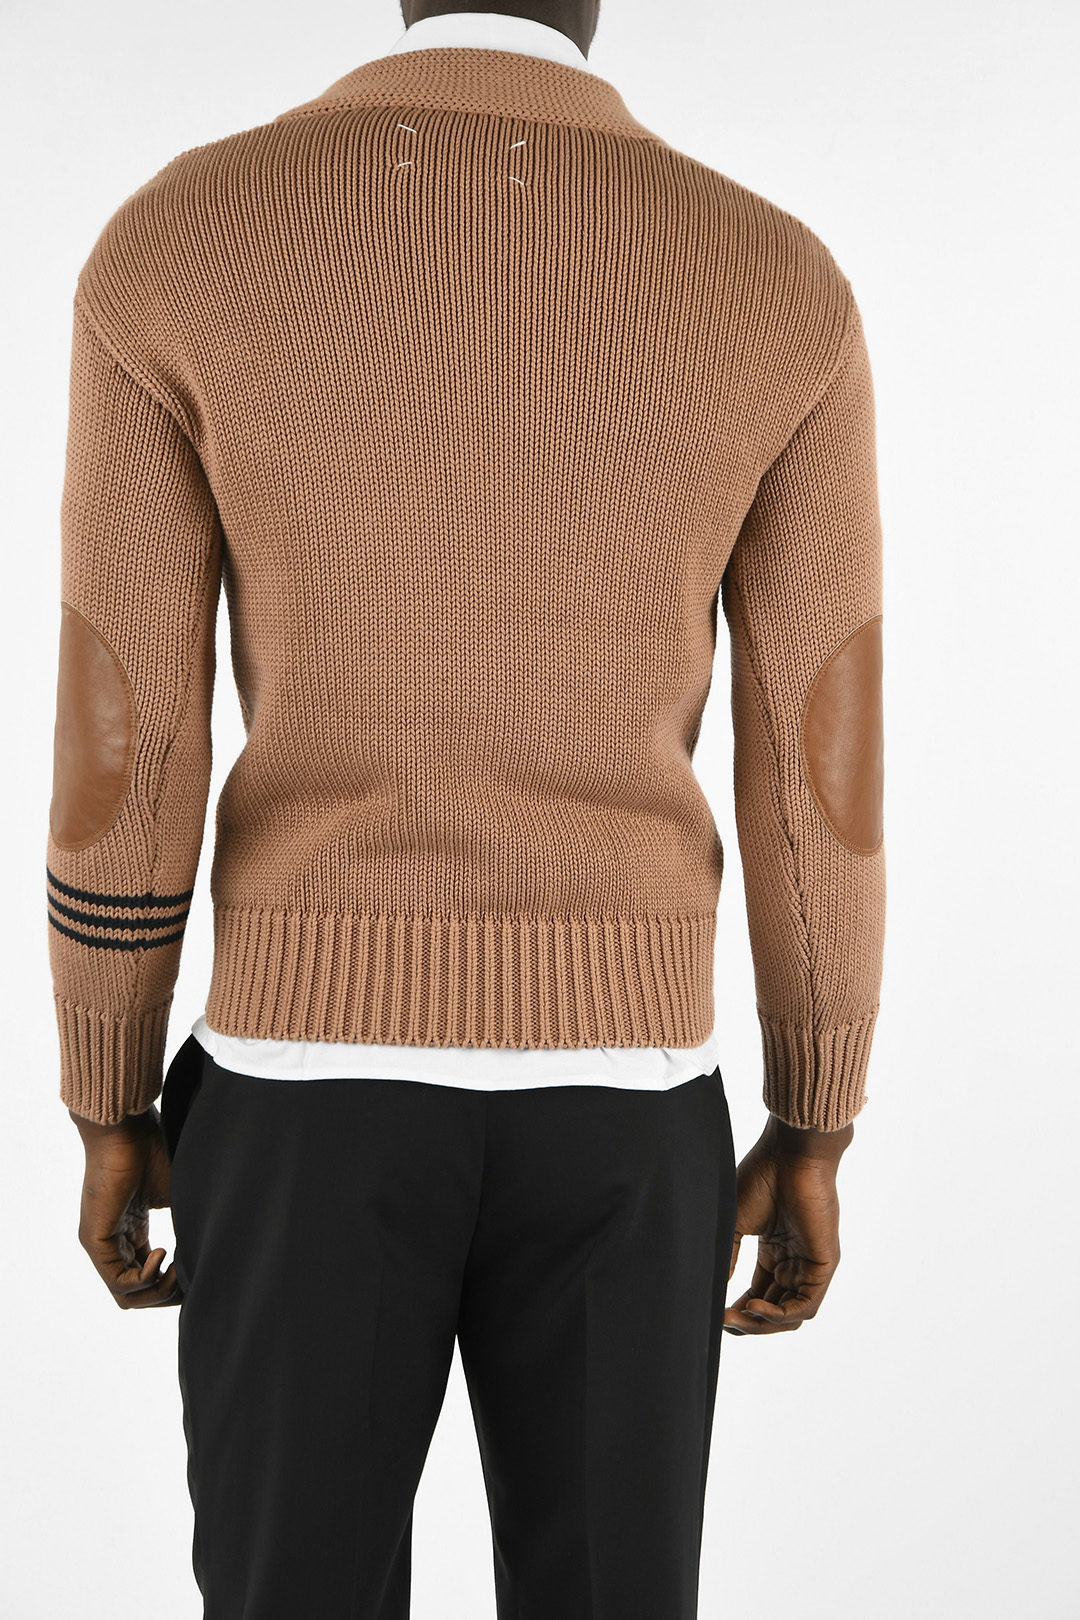 Maison Margiela MM10 V-neck Sweater with Leather Details men - Glamood ...